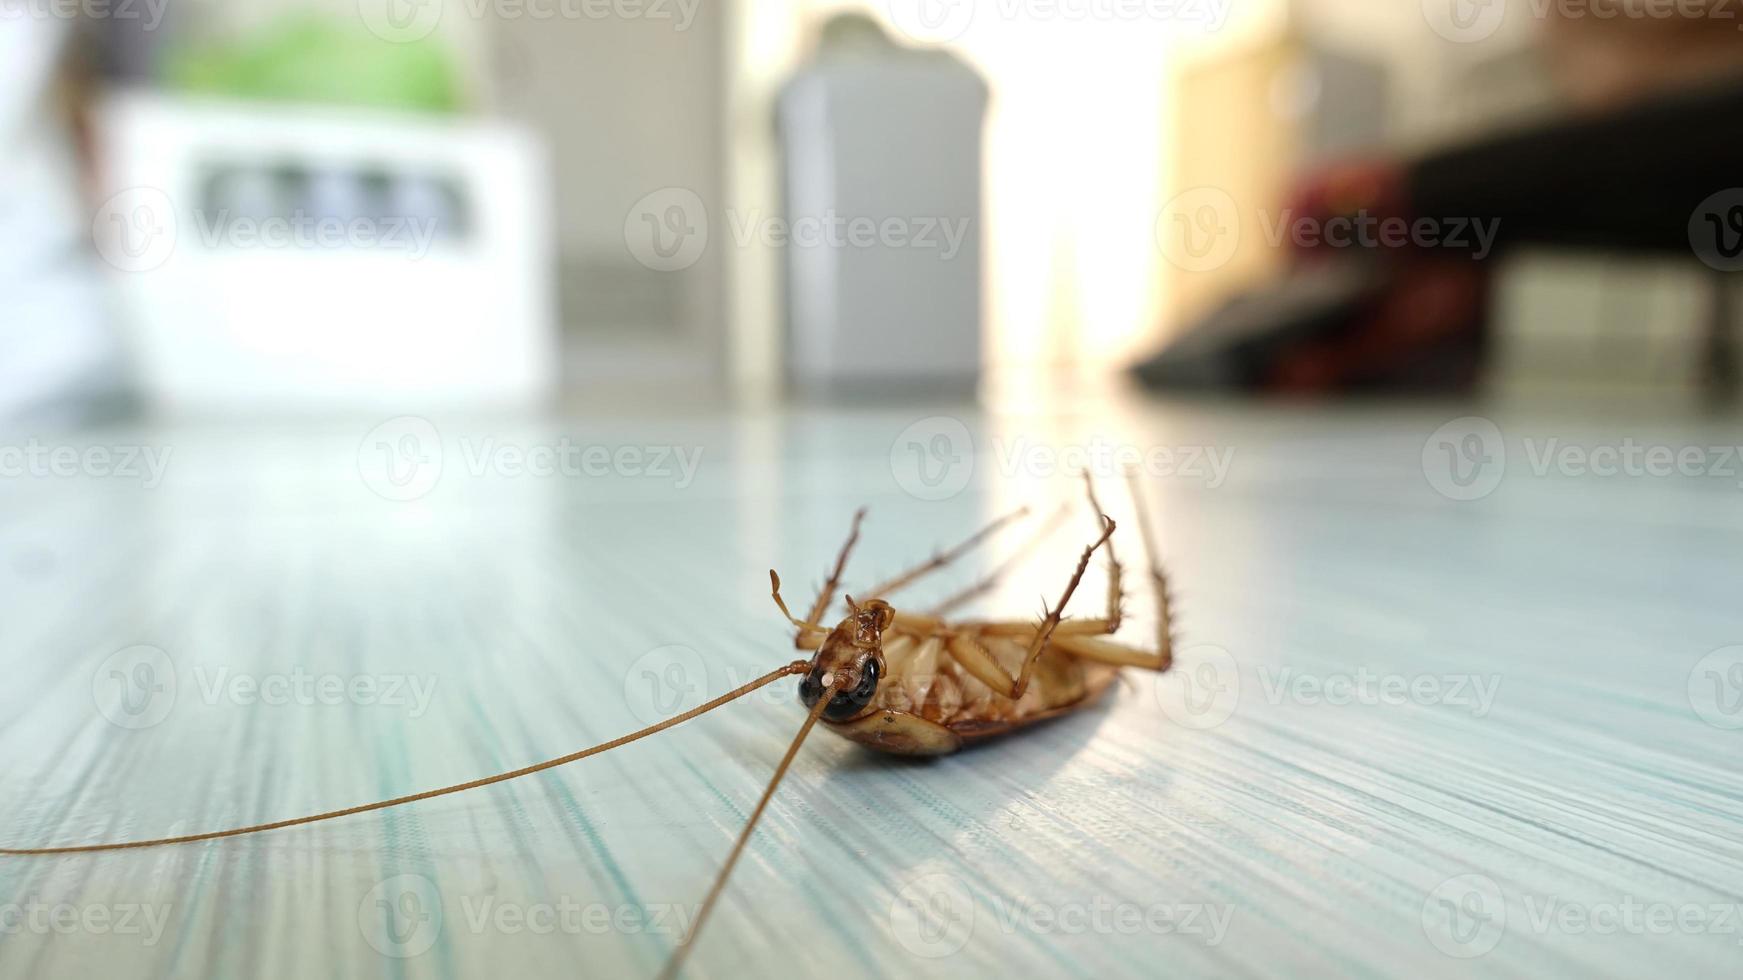 cucaracha muerta en el suelo foto